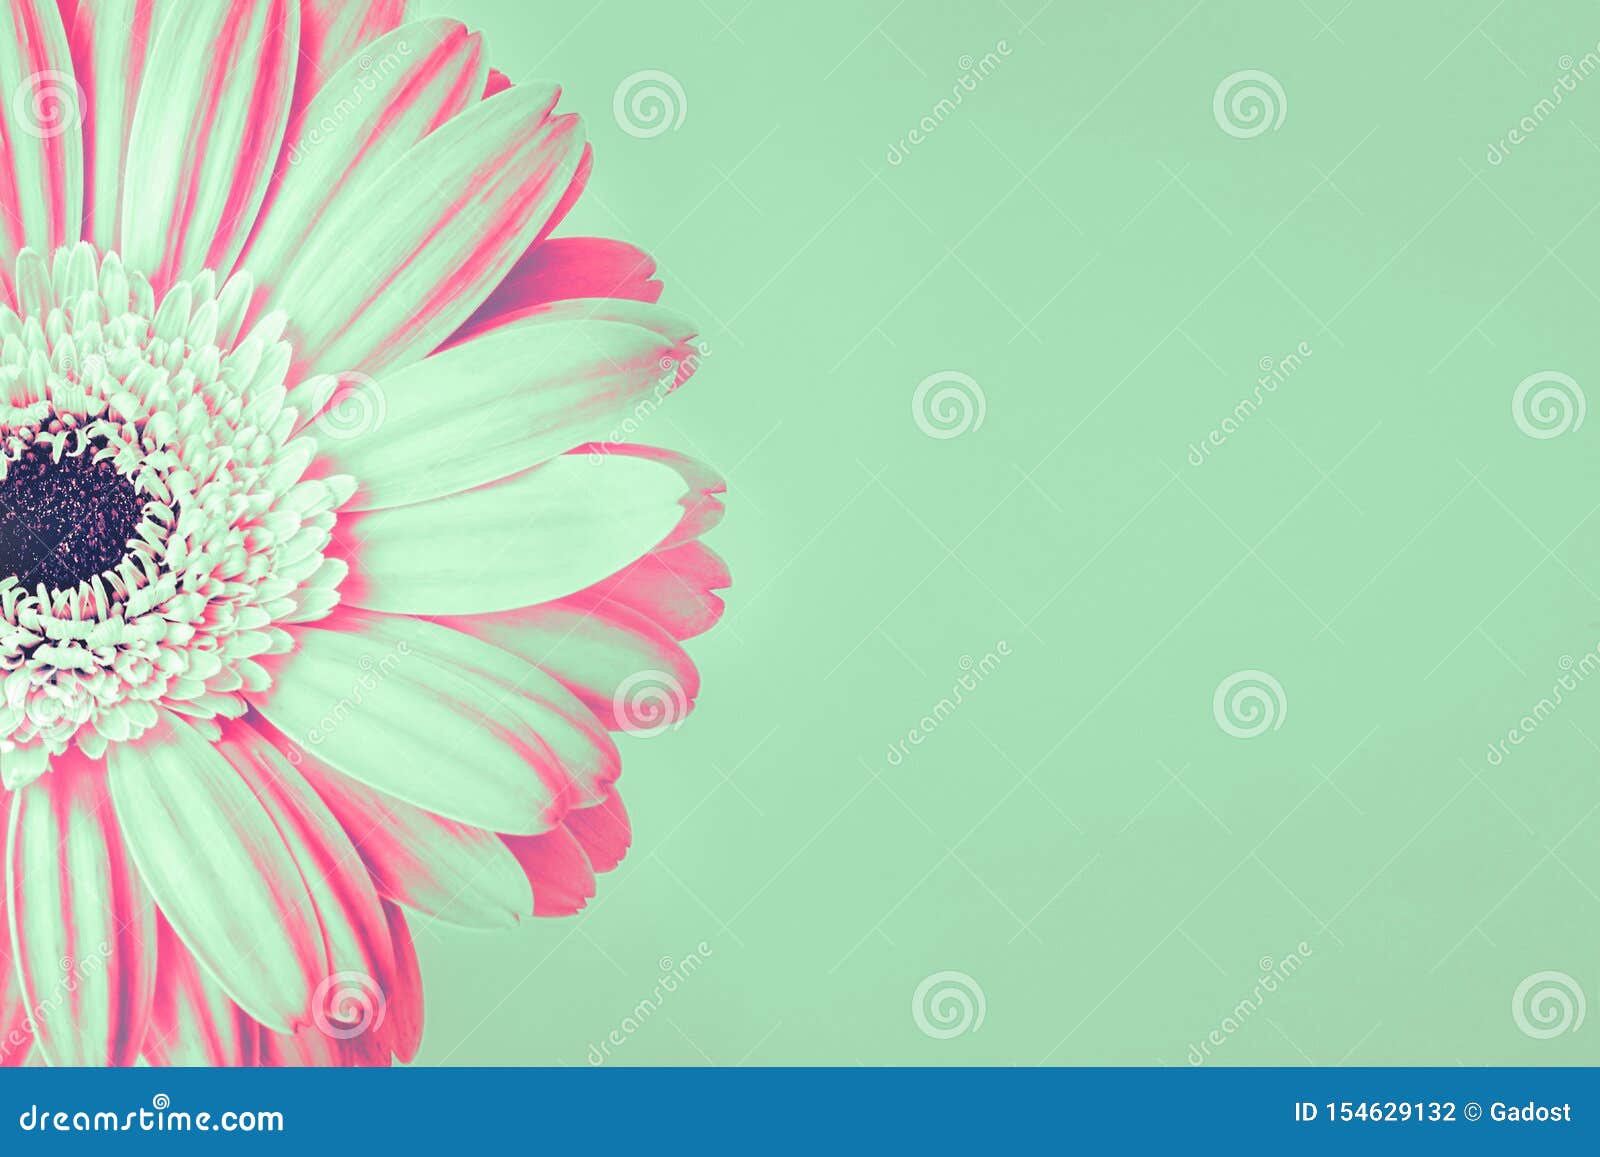 Hoa cúc màu xanh dương và hồng nhạt không chỉ đơn giản là một bức ảnh hoa, mà còn đưa bạn vào một thế giới thơ mộng. Hãy ngắm nhìn cánh hoa nhỏ xinh, đầy đủ sắc màu xanh dương và hồng nhạt cùng nền xanh lá cây tươi mát. Bức ảnh sẽ chinh phục trái tim bạn ngay từ lần đầu tiên.